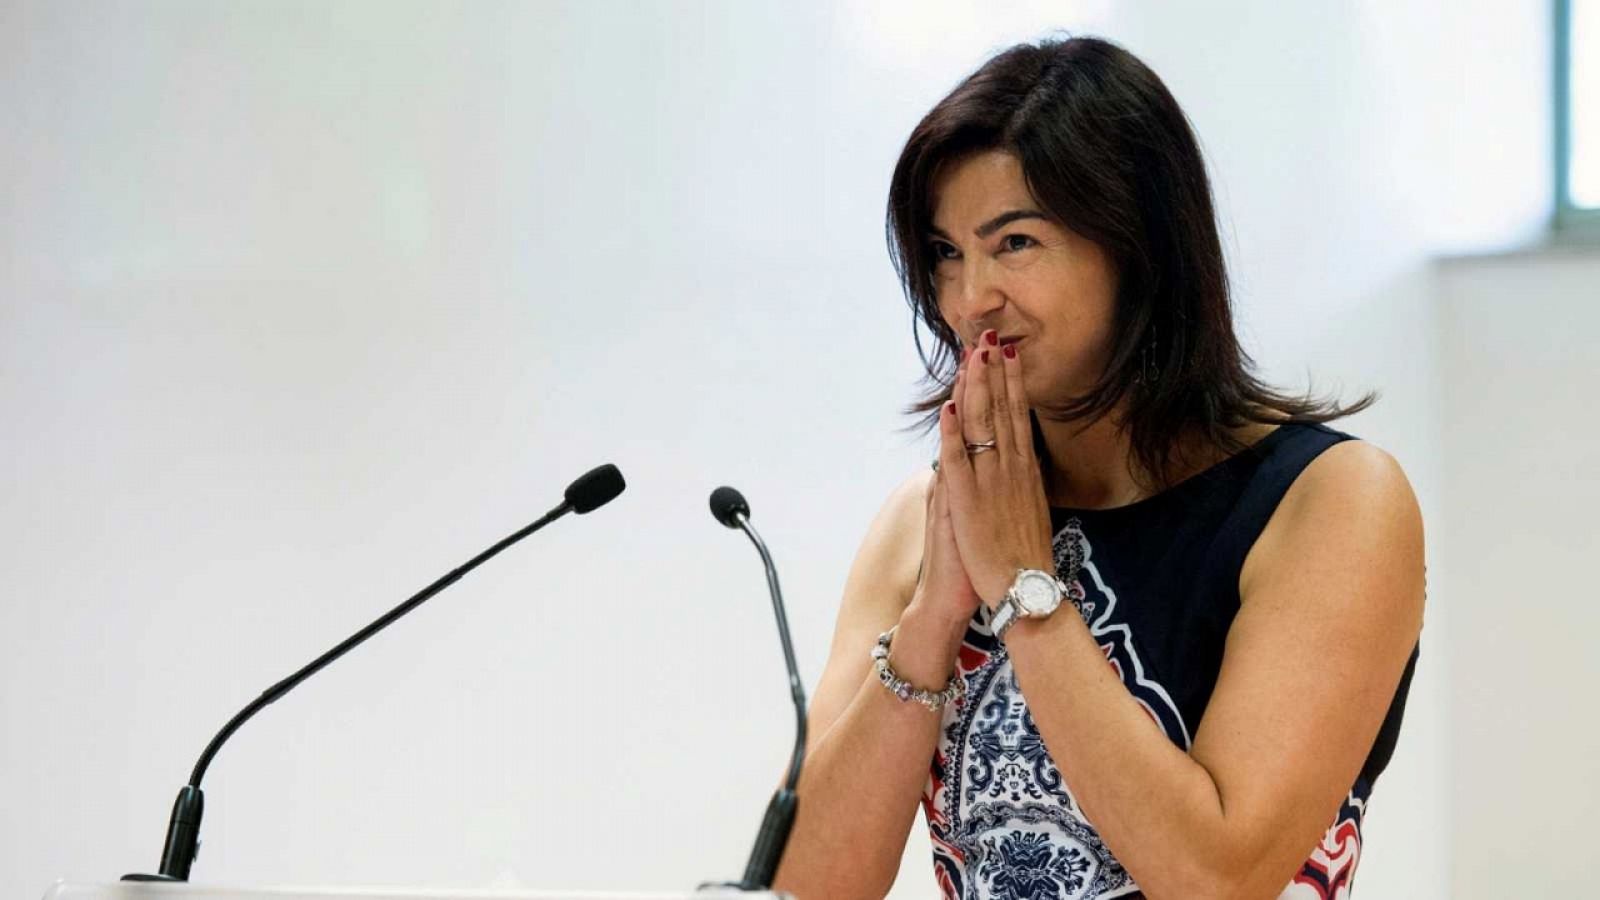 Radiogaceta de los deportes - María José Rienda, primera mujer en presidir el CSD - Escuchar ahora